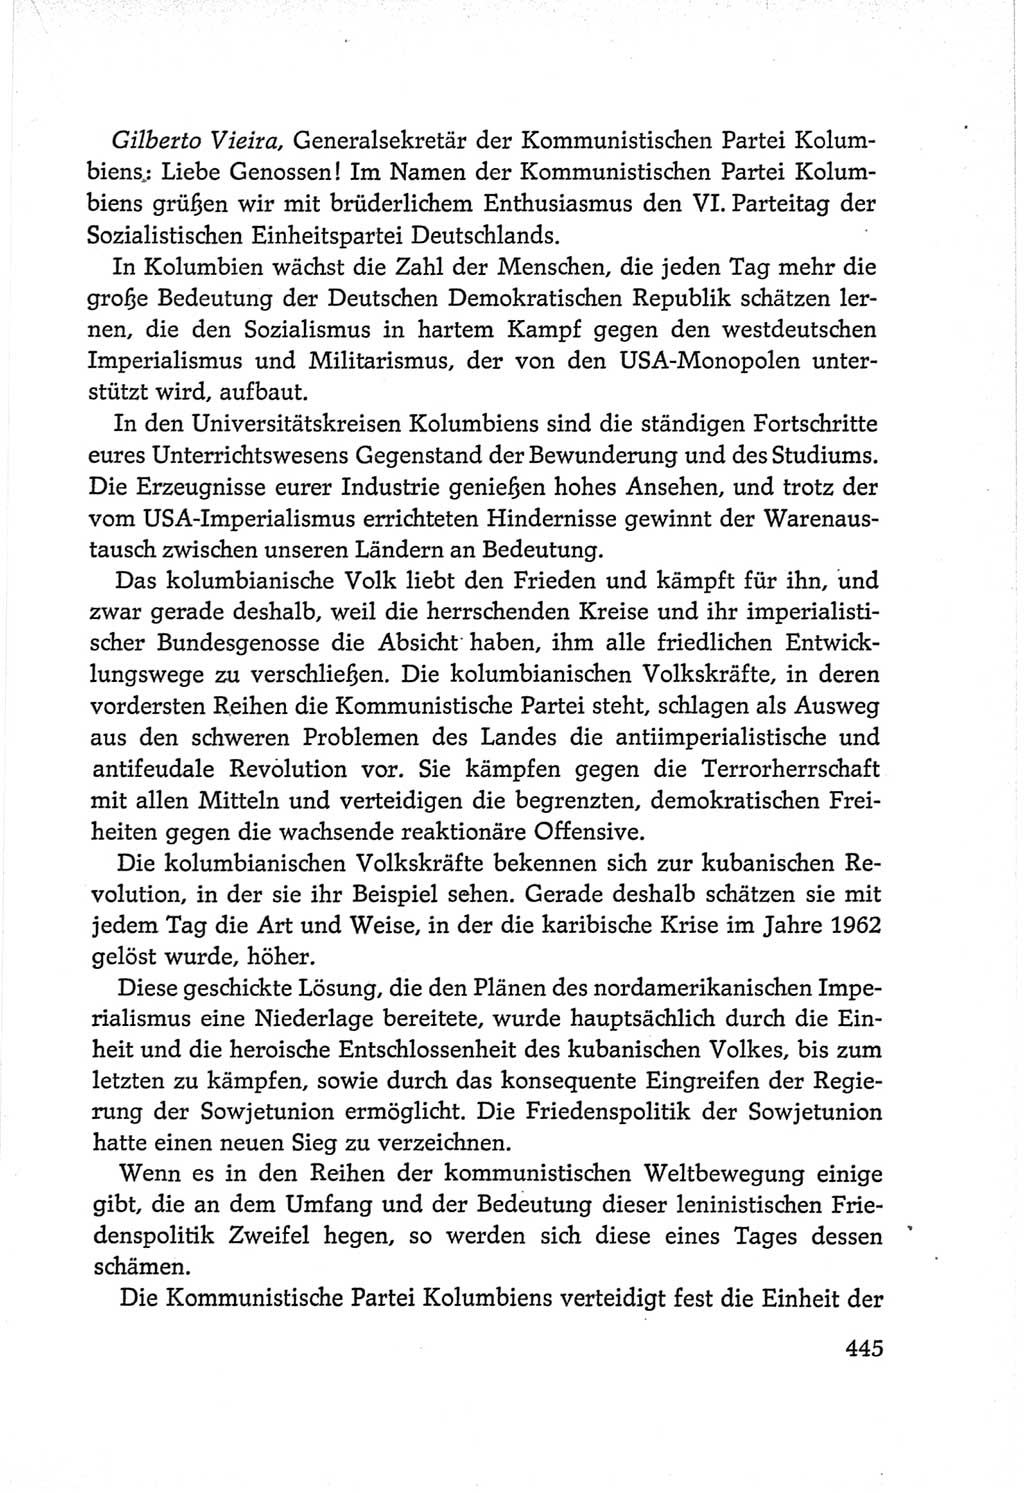 Protokoll der Verhandlungen des Ⅵ. Parteitages der Sozialistischen Einheitspartei Deutschlands (SED) [Deutsche Demokratische Republik (DDR)] 1963, Band Ⅱ, Seite 445 (Prot. Verh. Ⅵ. PT SED DDR 1963, Bd. Ⅱ, S. 445)